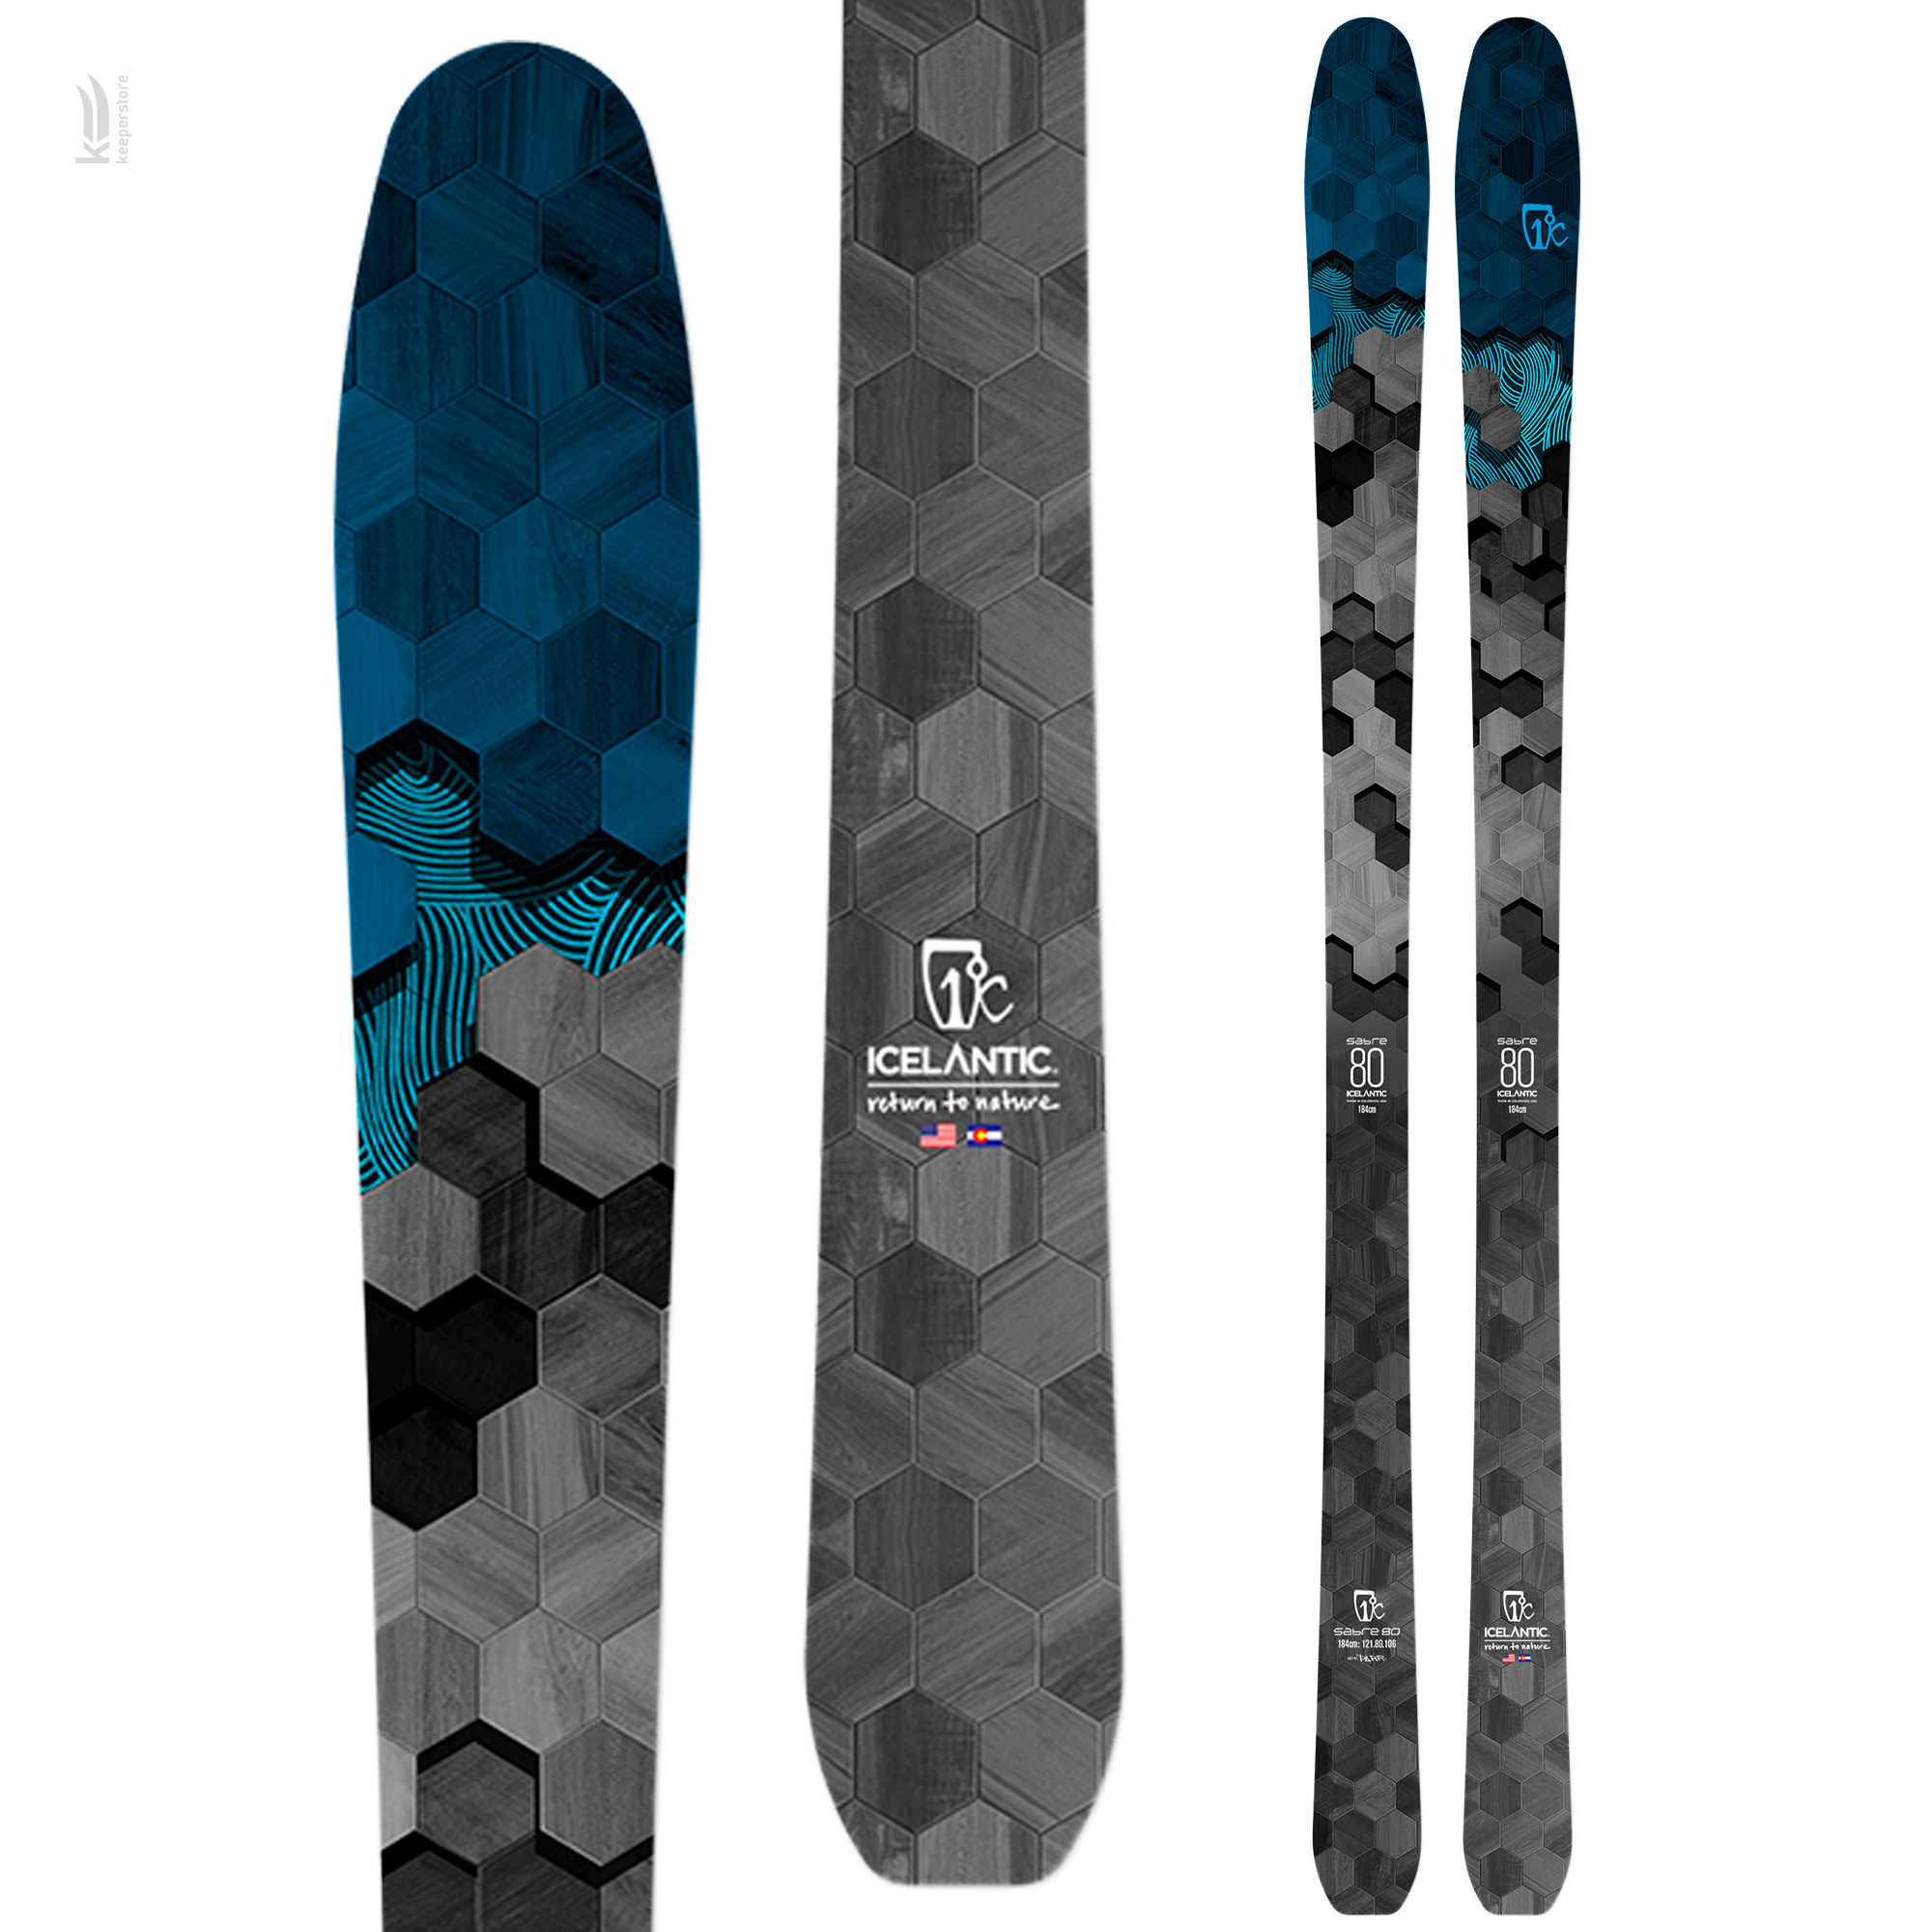 Лыжи для новичков Icelantic Sabre 80 2020/2021 174cm